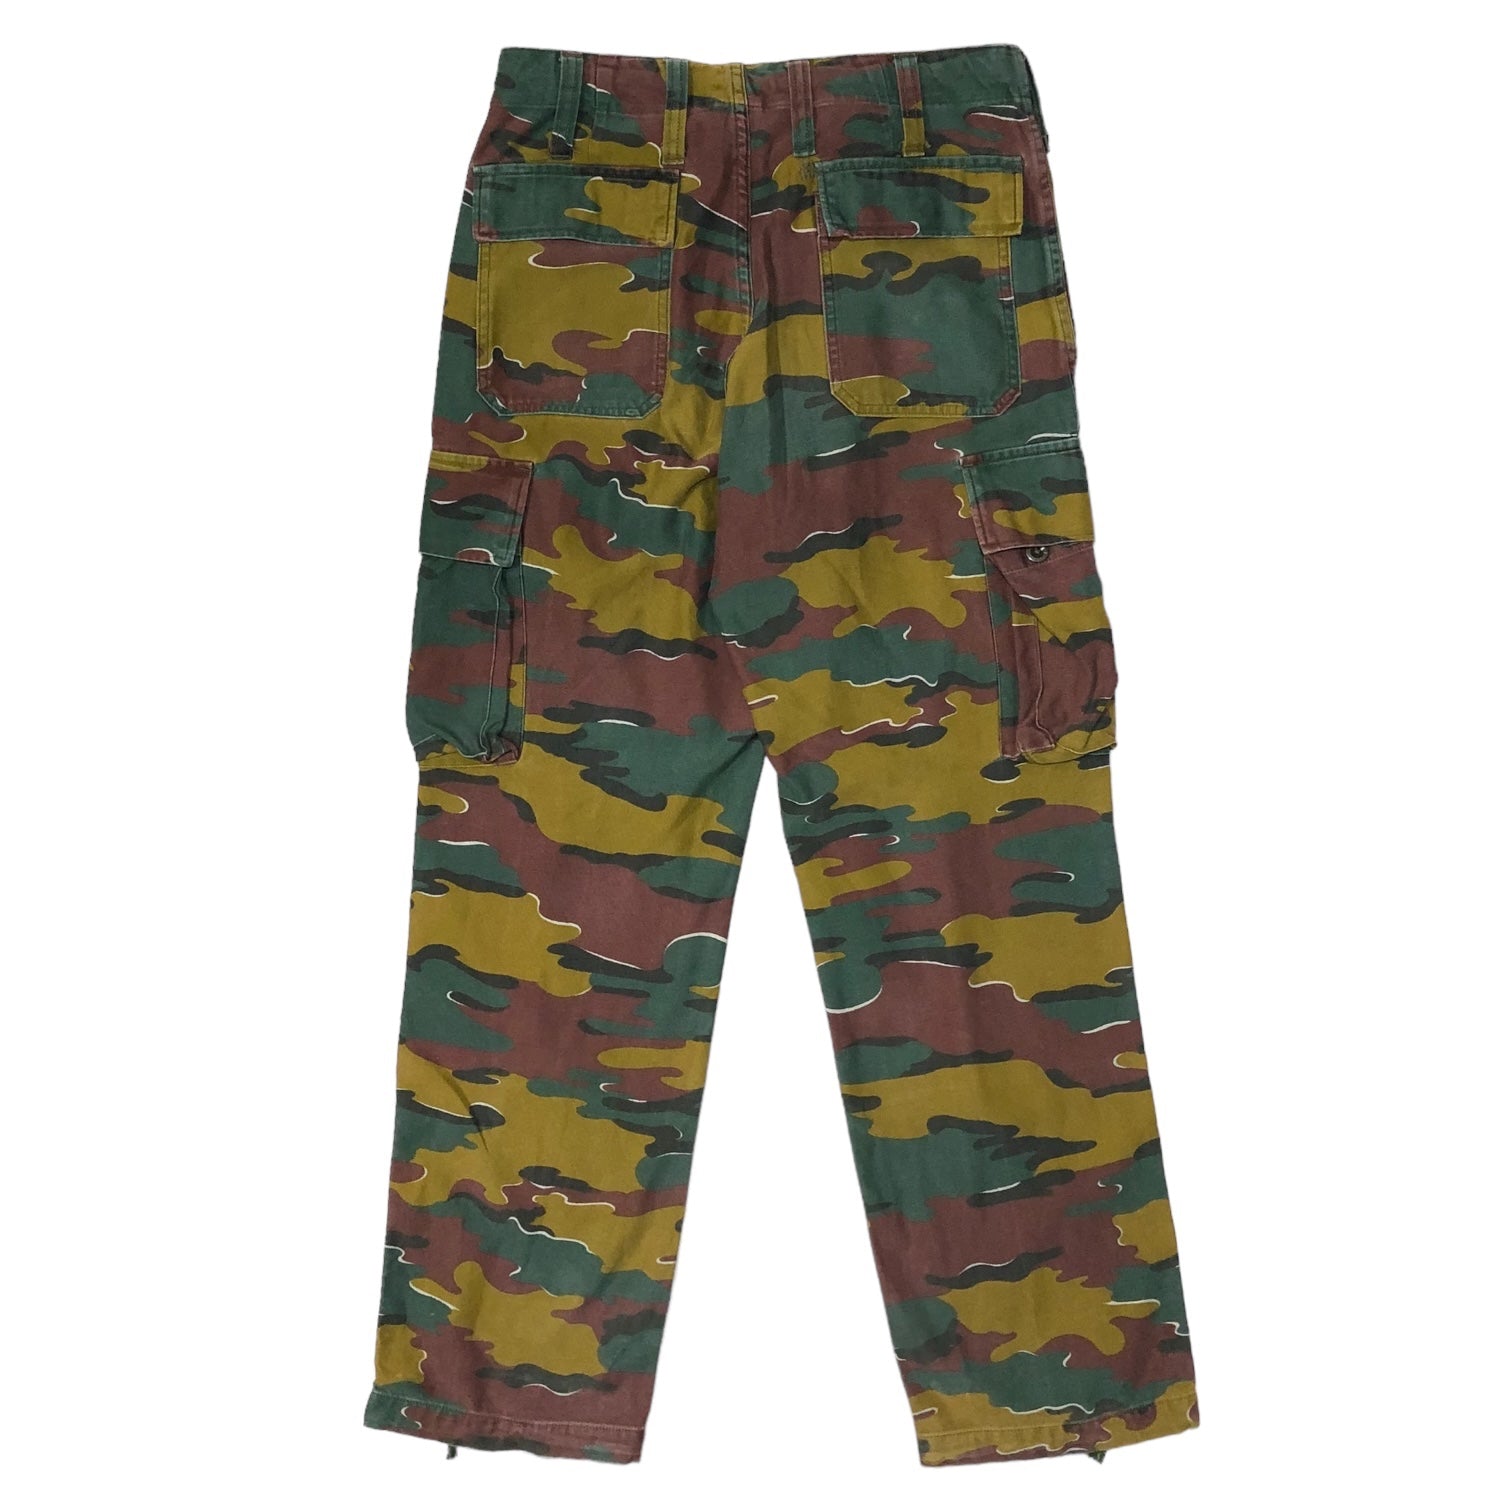 belgian army(ベルギー軍) M-90 Jigsaw camo double knee cargo pants ジグゾーカモ ダブルニー カーゴ パンツ 表記消え(L程度) ブラウン×グリーン カモフラ